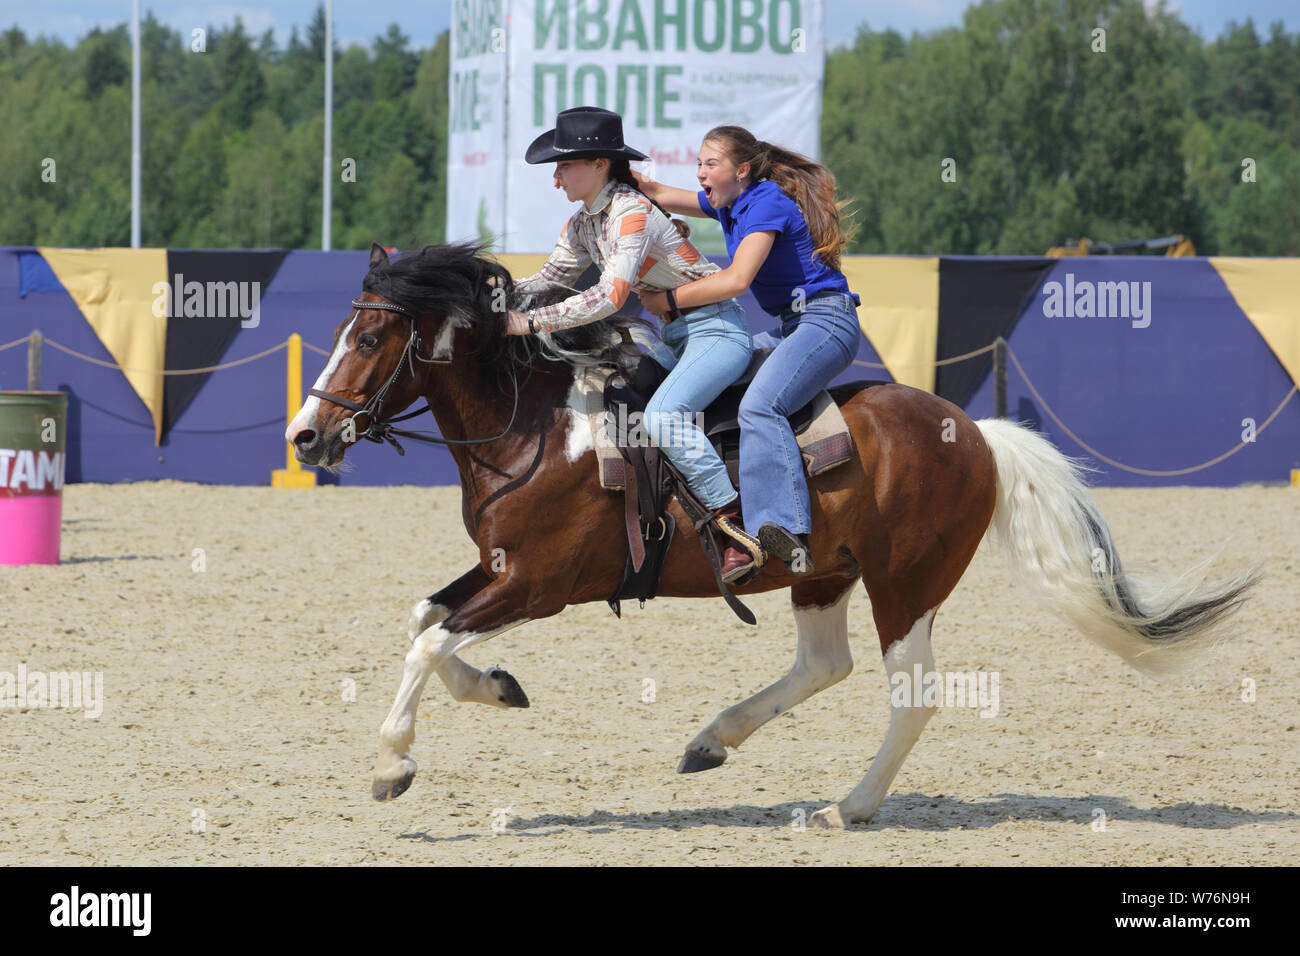 Region Moskau, Russland, Juli 19-21, 2019, II International Equestrian Festival' Ivanovo Feld': Cowgirl während der Frauen Barrel Racing Wettbewerb Stockfoto